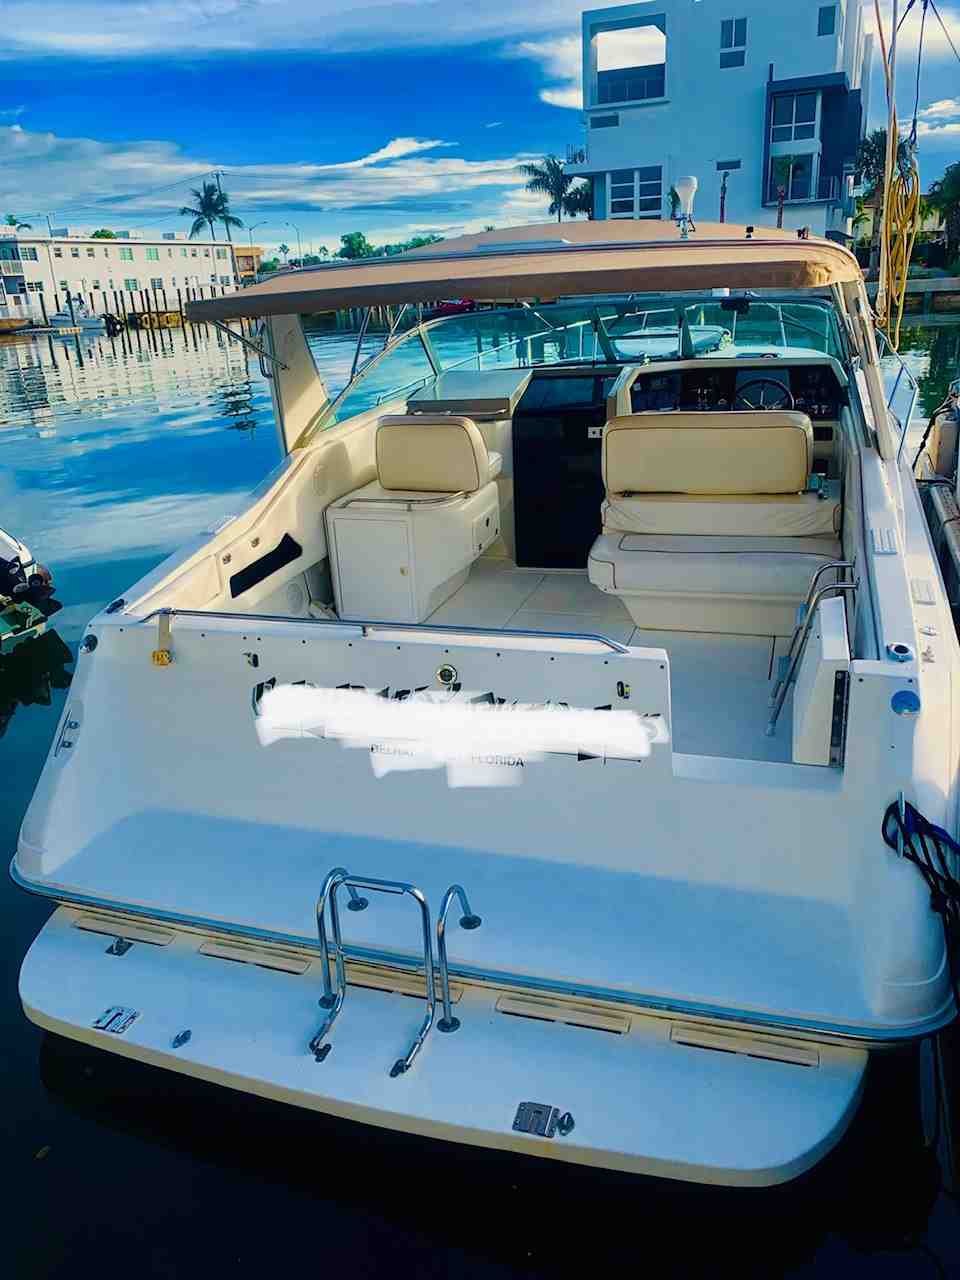  boat rentals Florida MIAMI BEACH Florida  SeaRay Cruiser Express 1999 41 